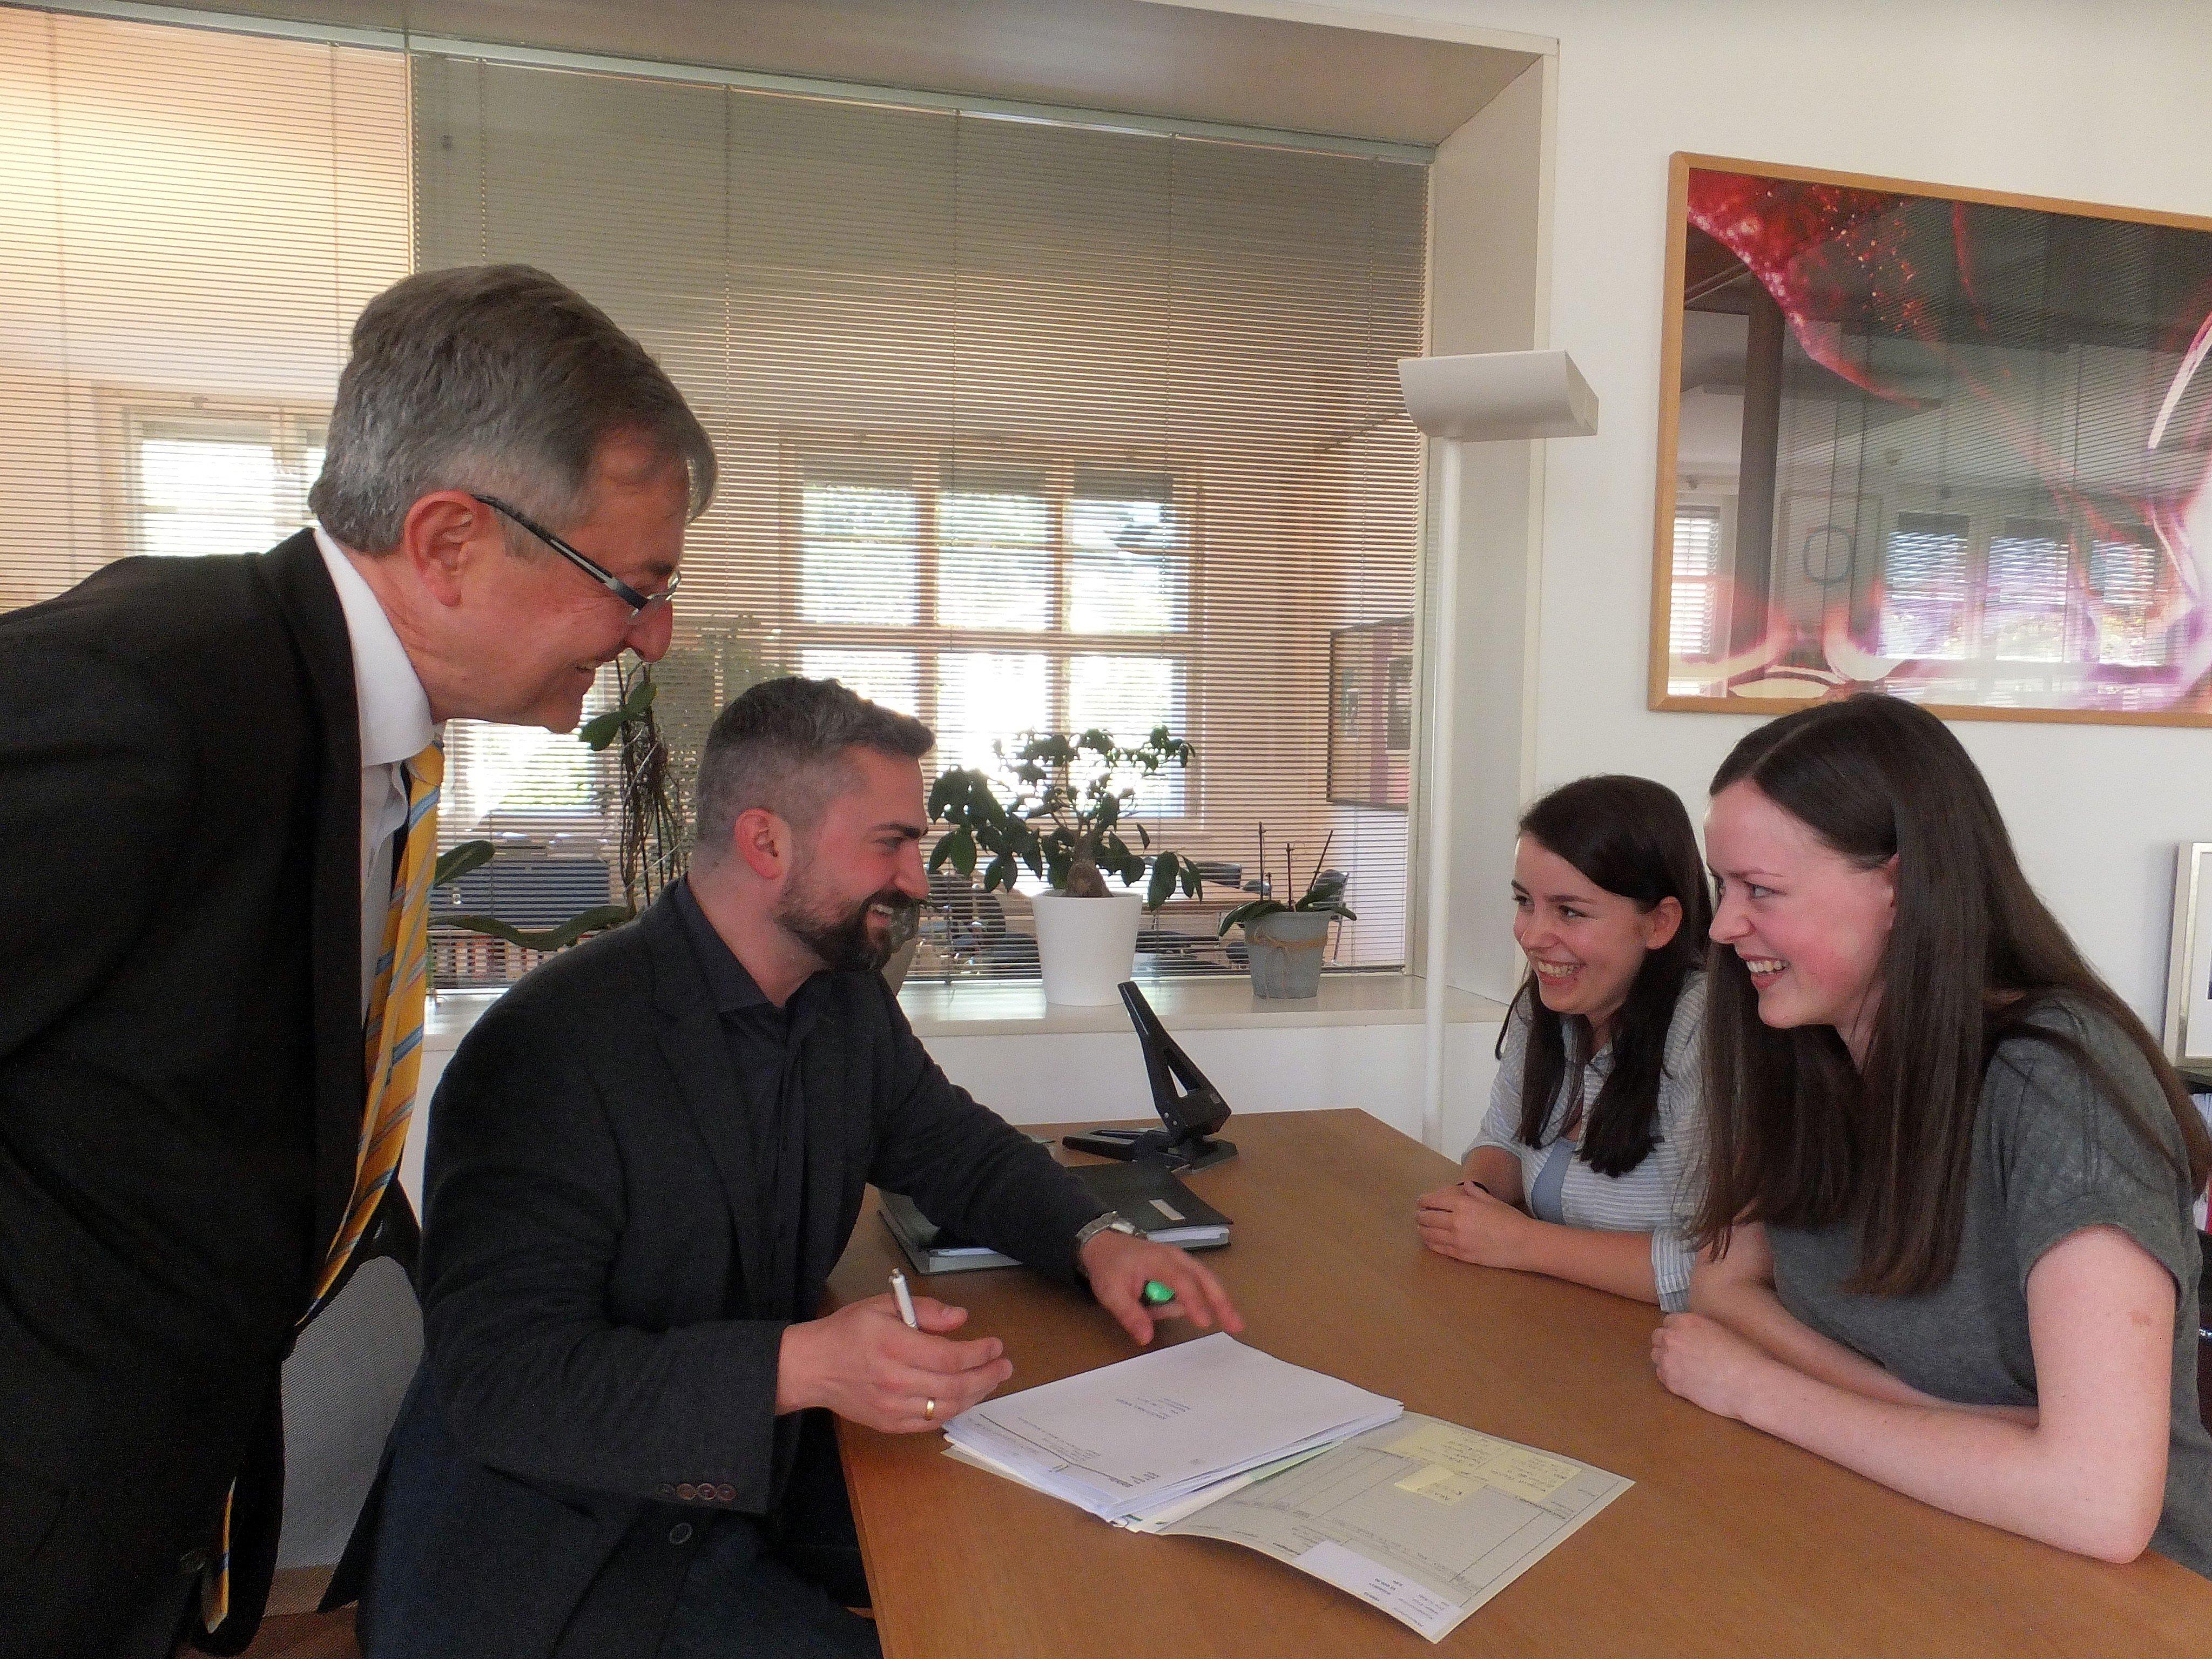 Chiara und Valentina erhalten bei den Anwälten Helmuth und Robert Mäser eine fundierte Ausbildung